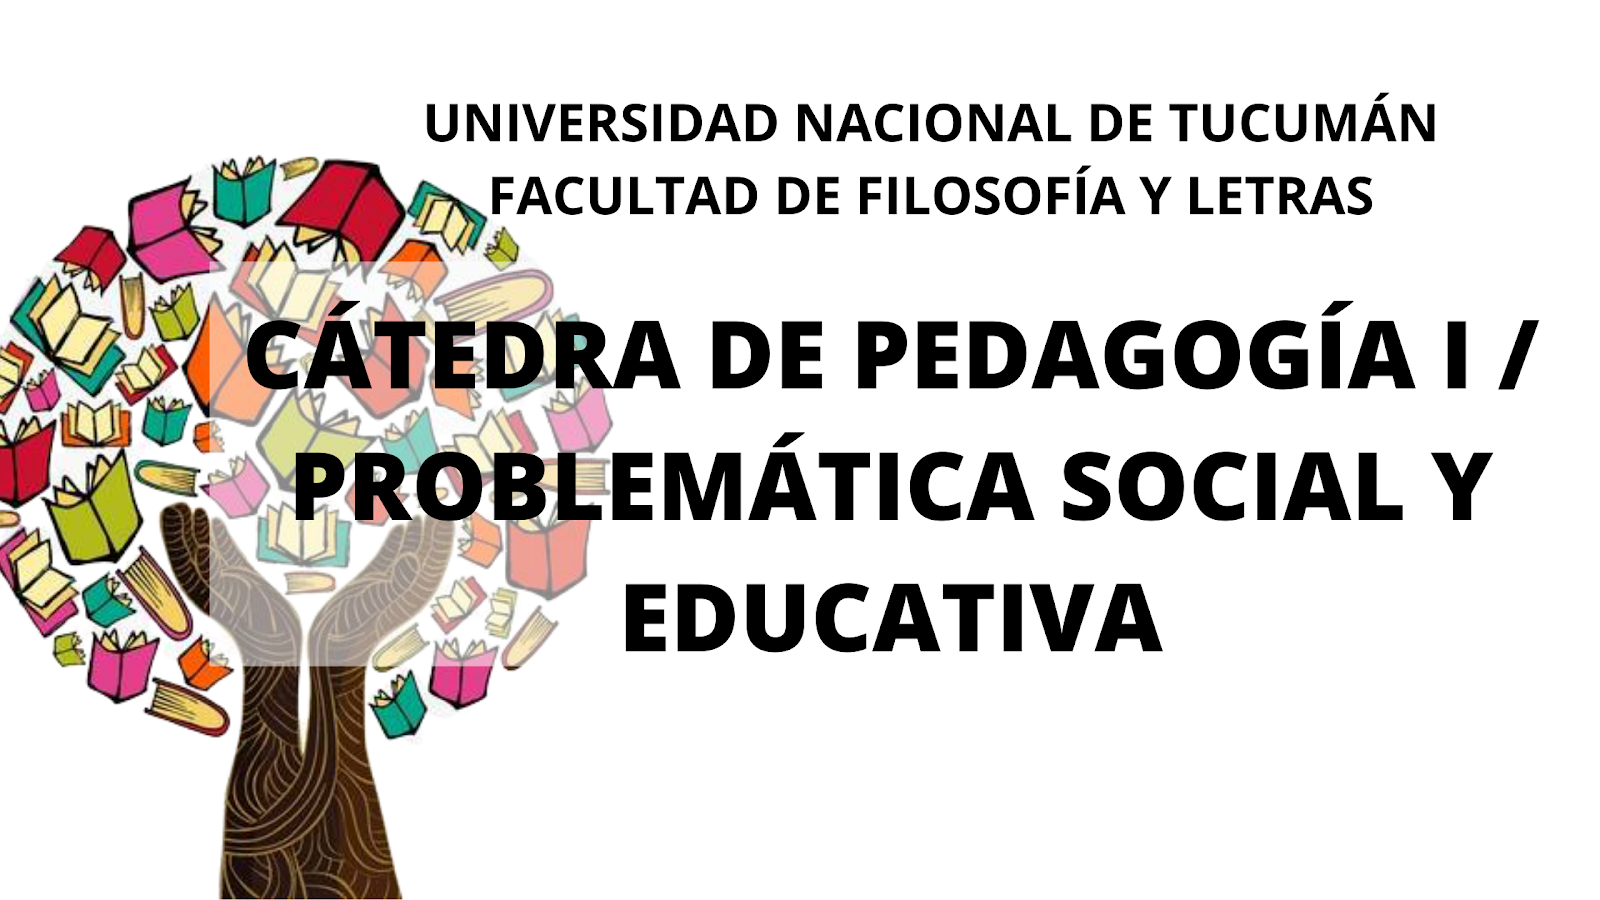 PEDAGOGÍA I / PROBLEMÁTICA SOCIAL Y EDUCATIVA  | FFyL - UNT